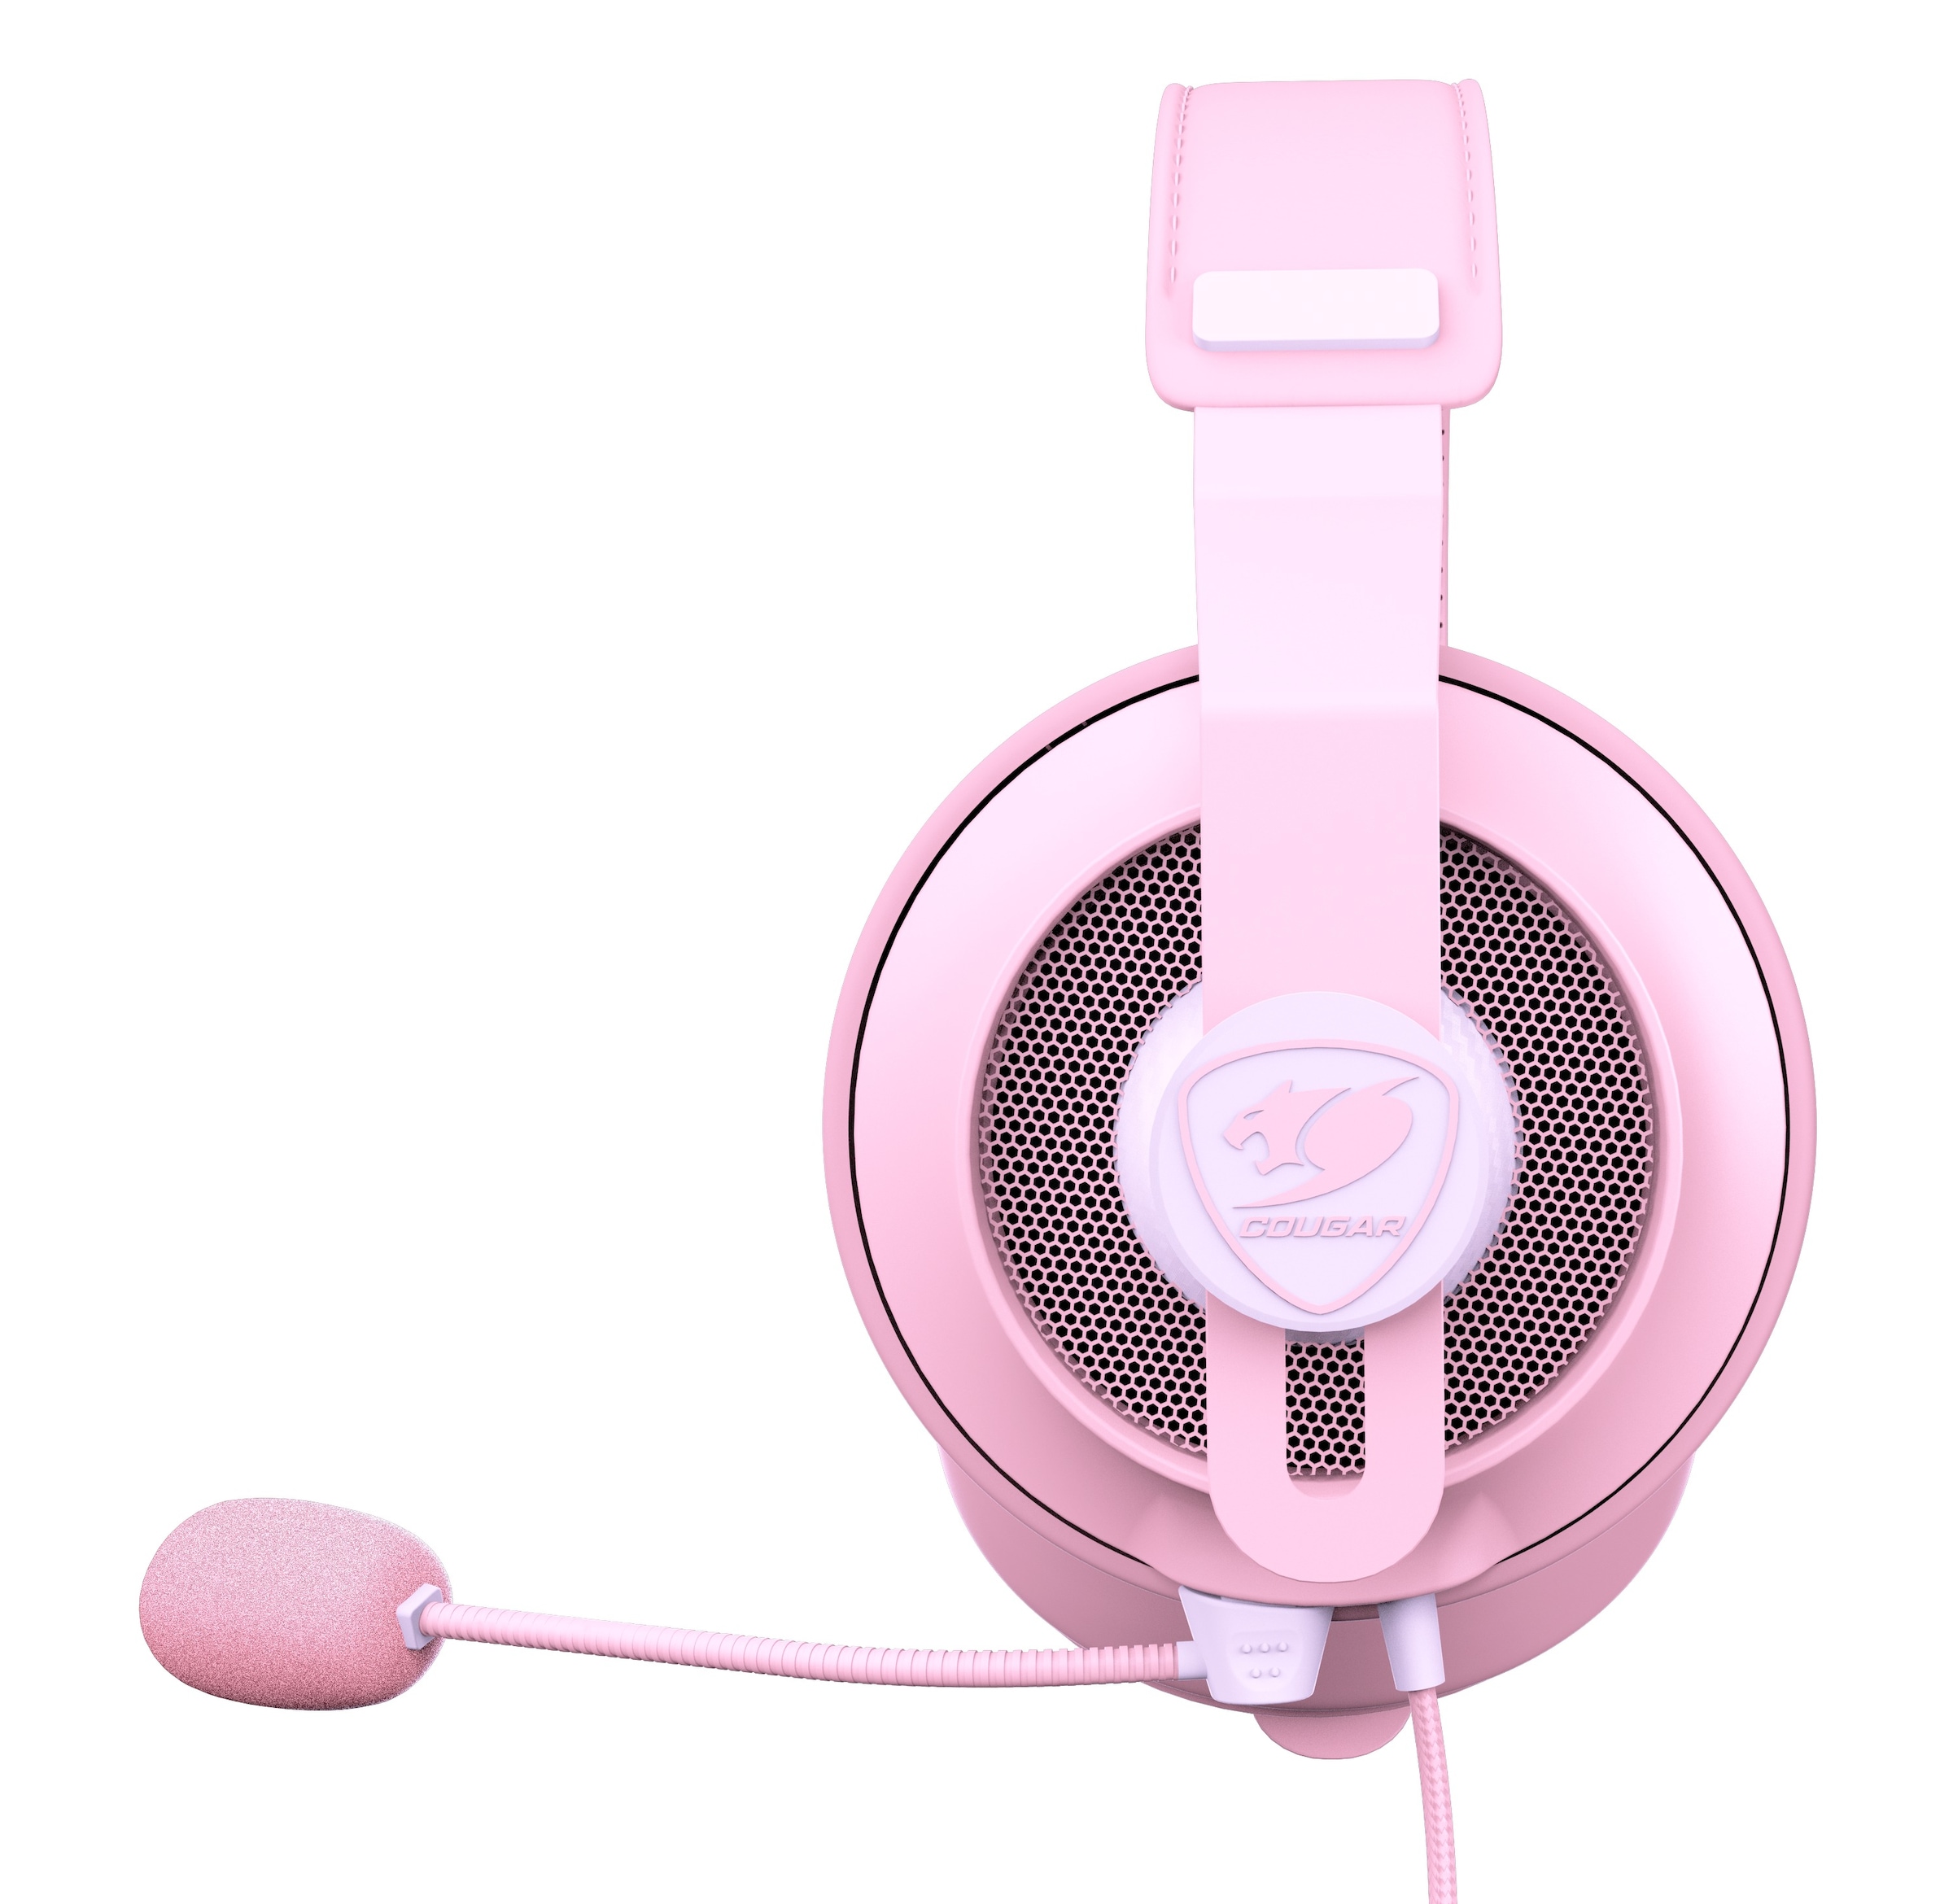 Cougar Gaming-Headset »PHONTUM S, Pink«